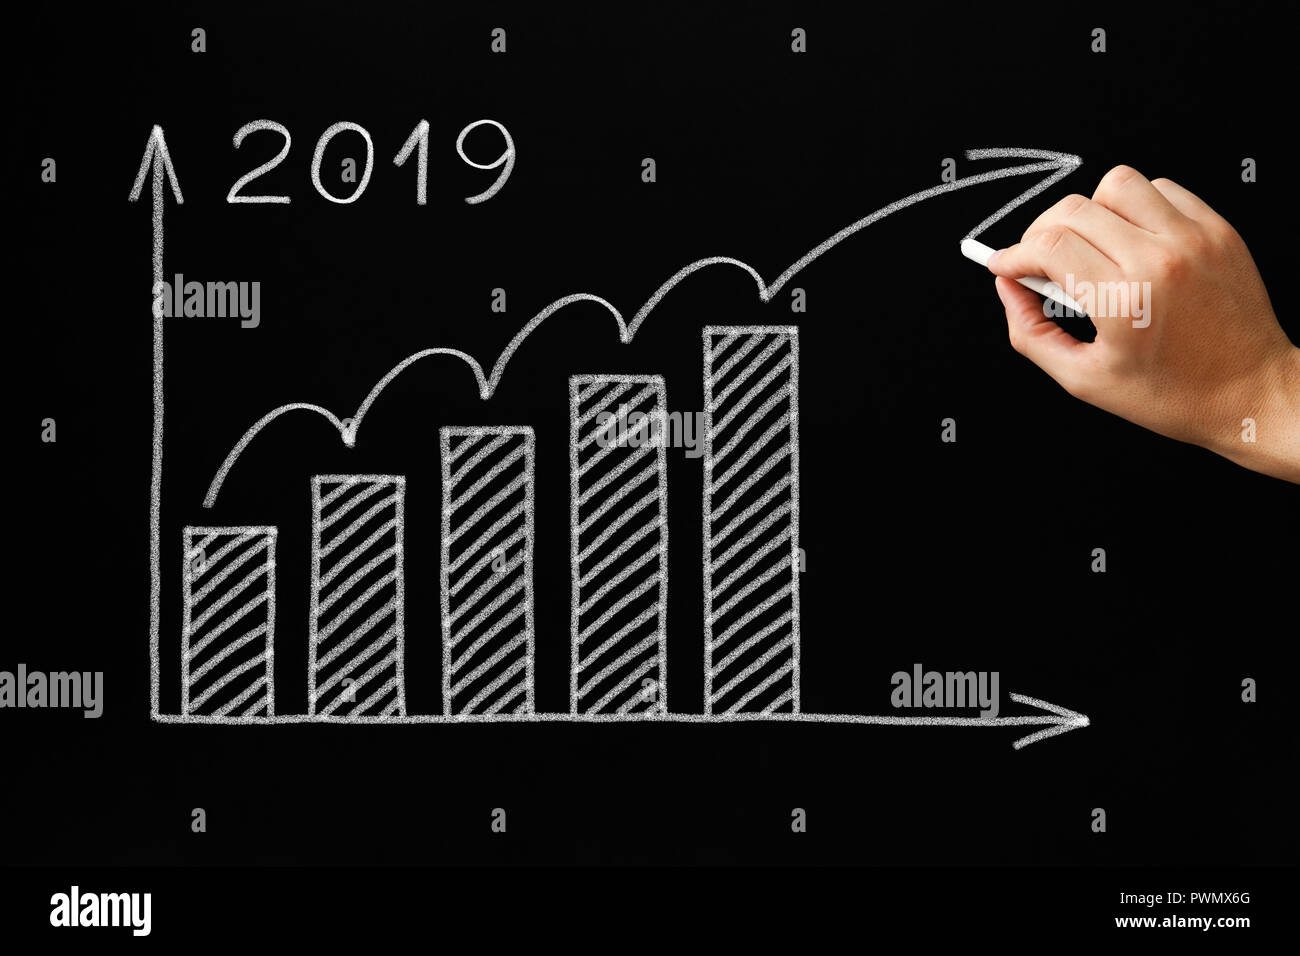 Handzeichnung Wachstum Grafik für das Jahr 2019 mit Kreide auf die Tafel. Stockfoto